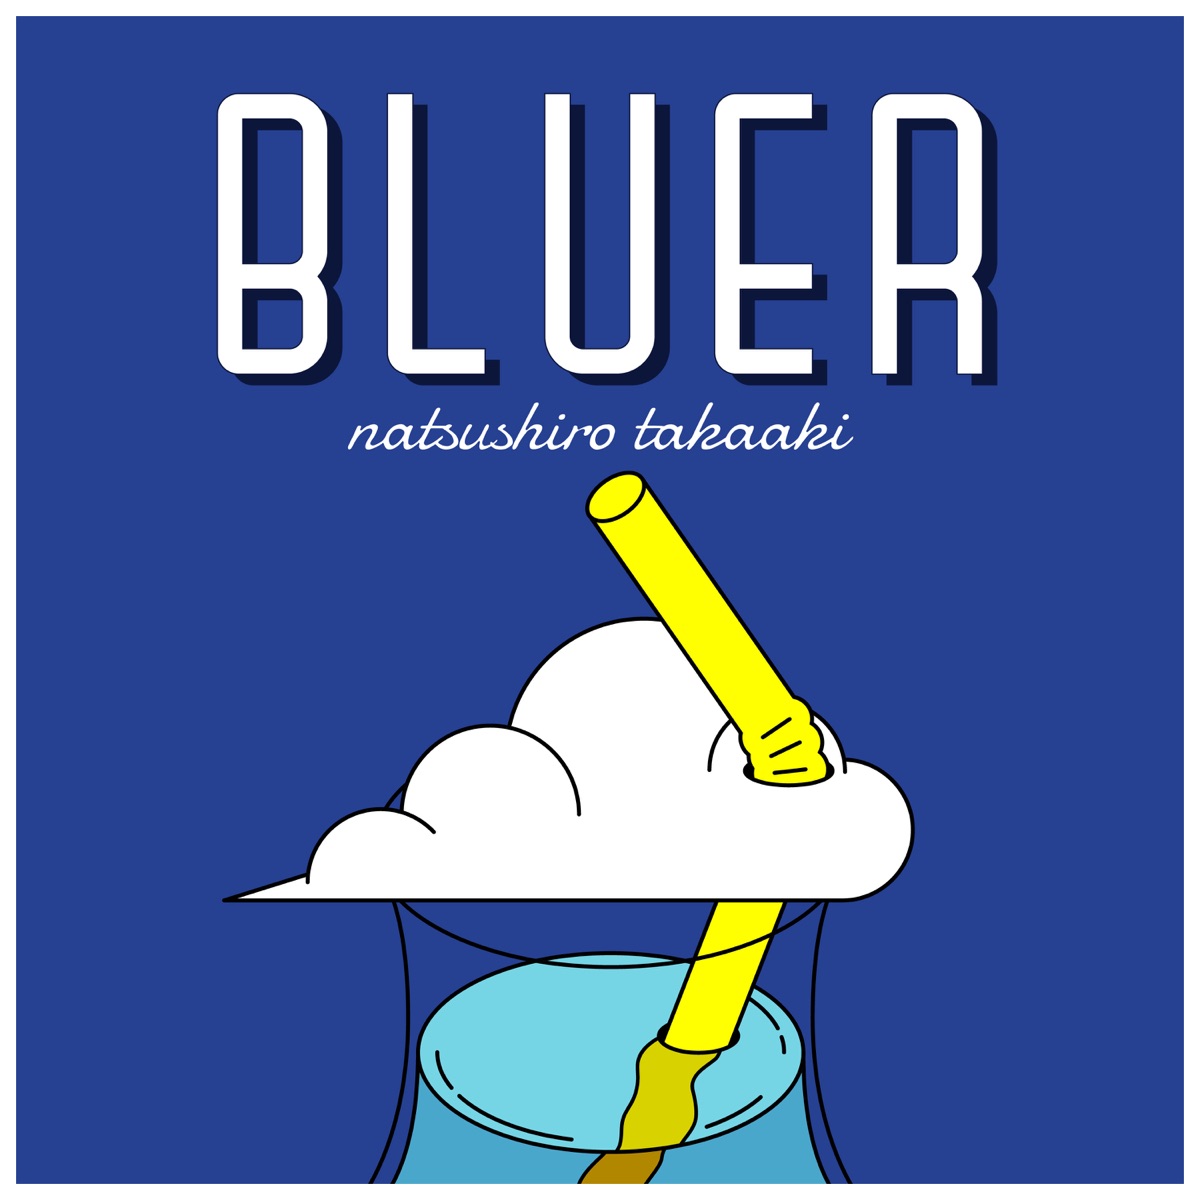 『夏代孝明 - 藍より群青 feat. 星街すいせい』収録の『BLUER』ジャケット